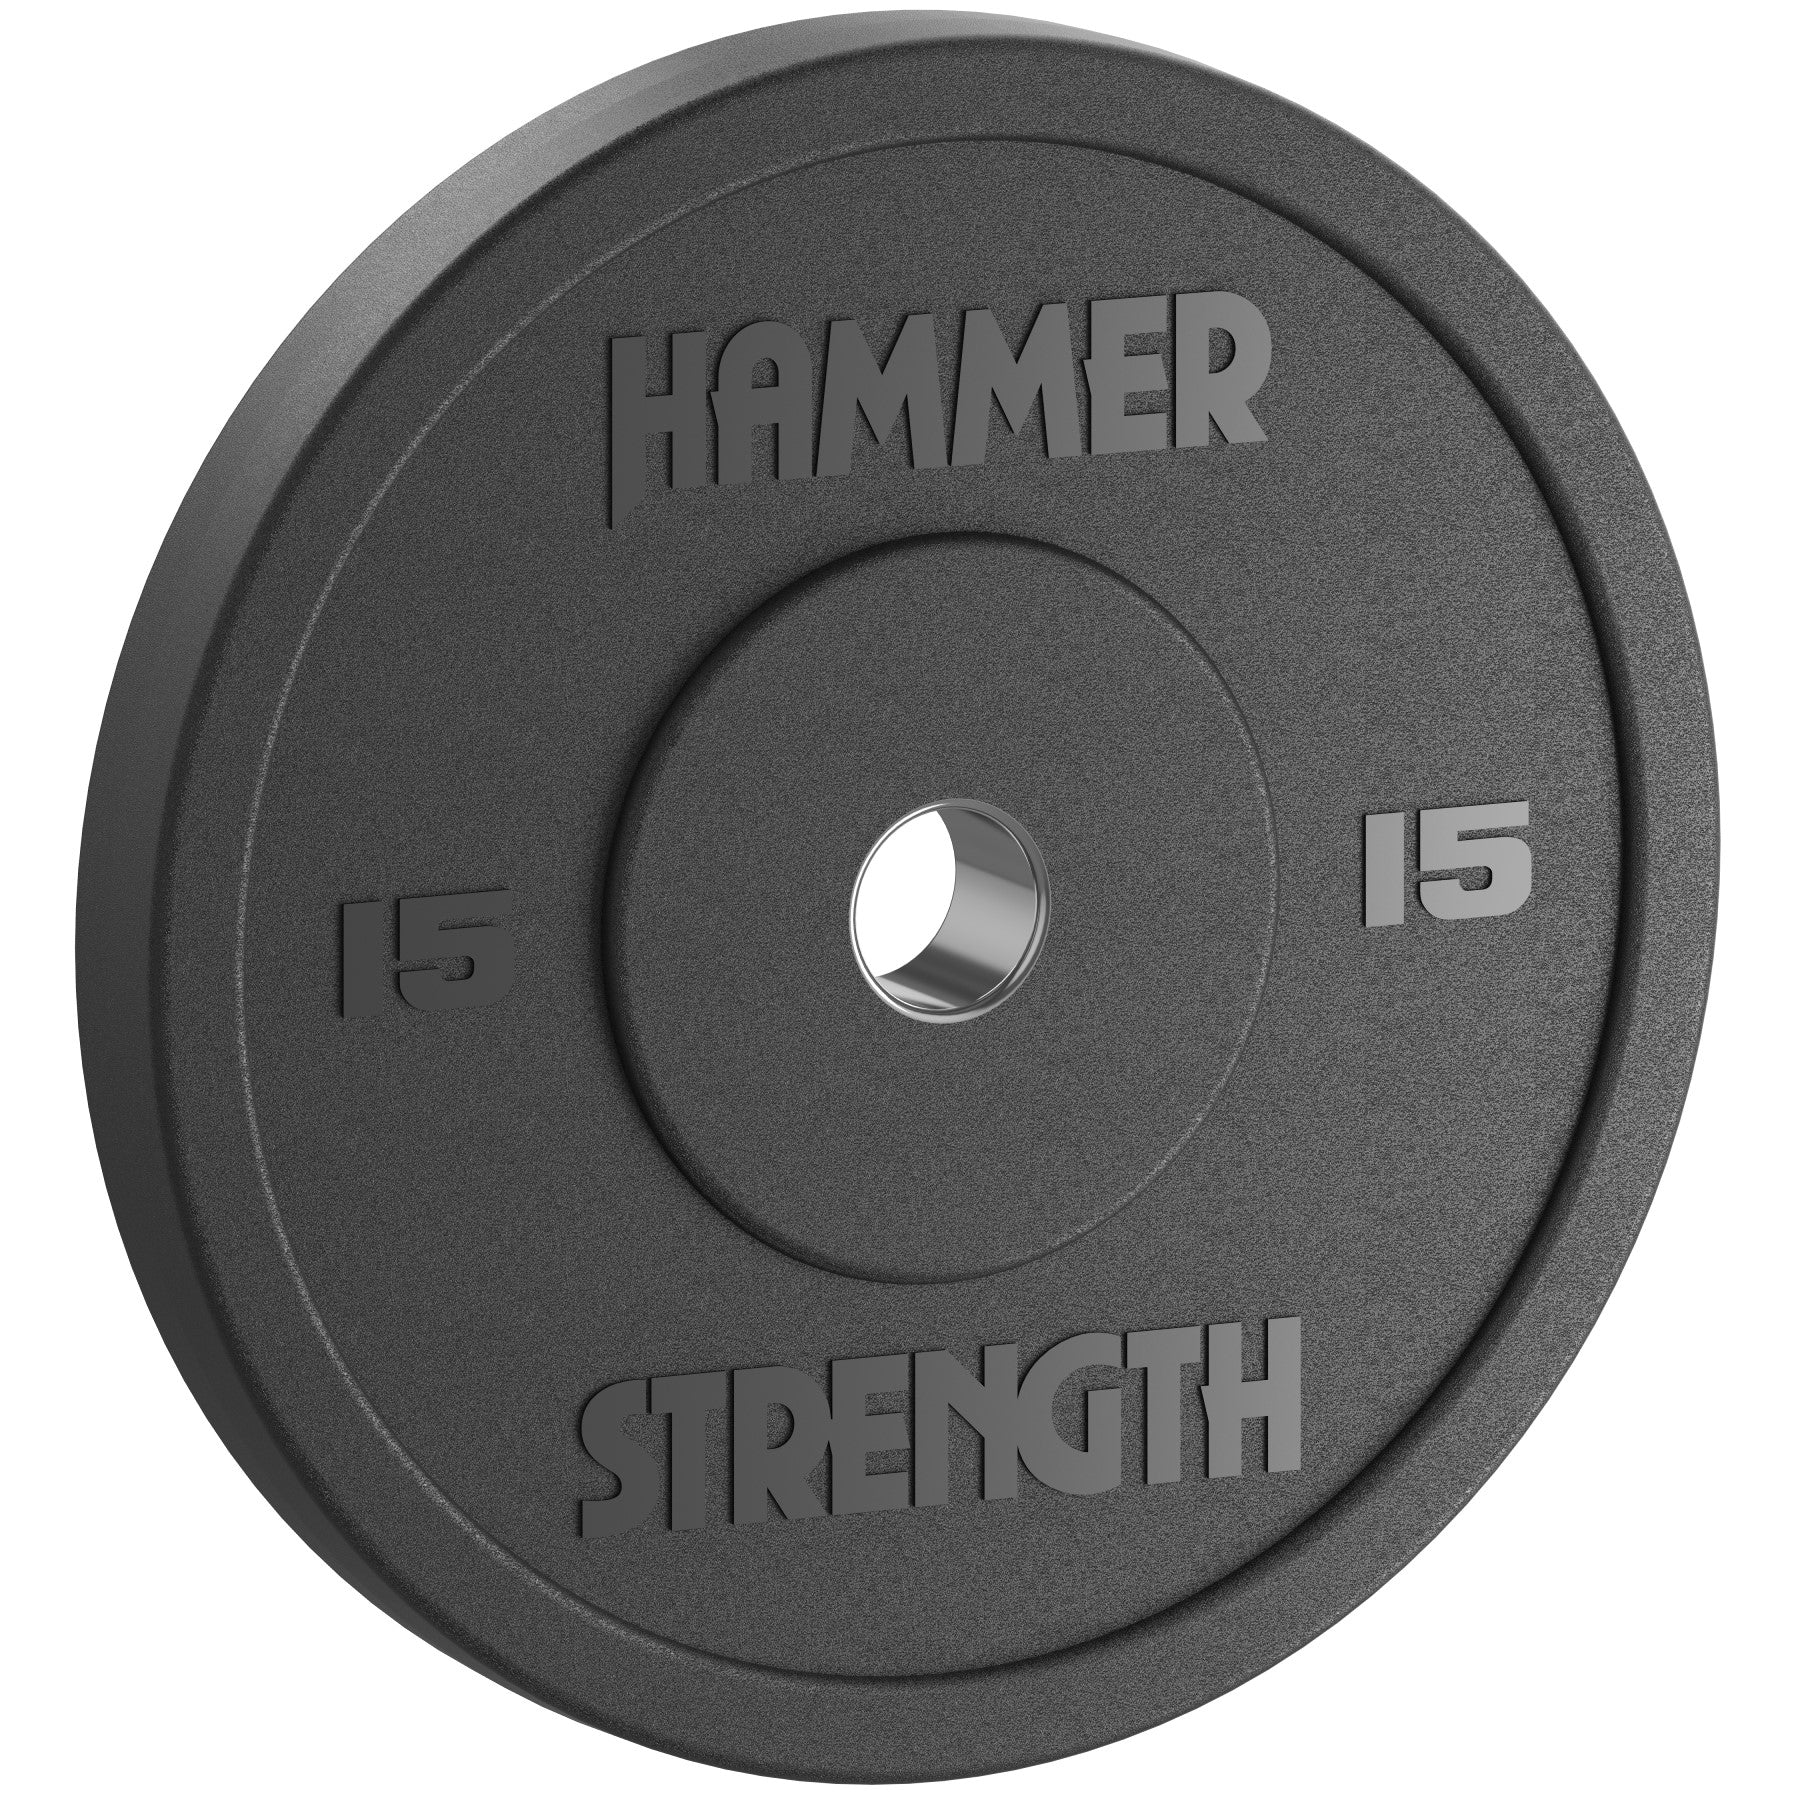 Hammer Strength Standard Rubber Bumper - 15 lbs.